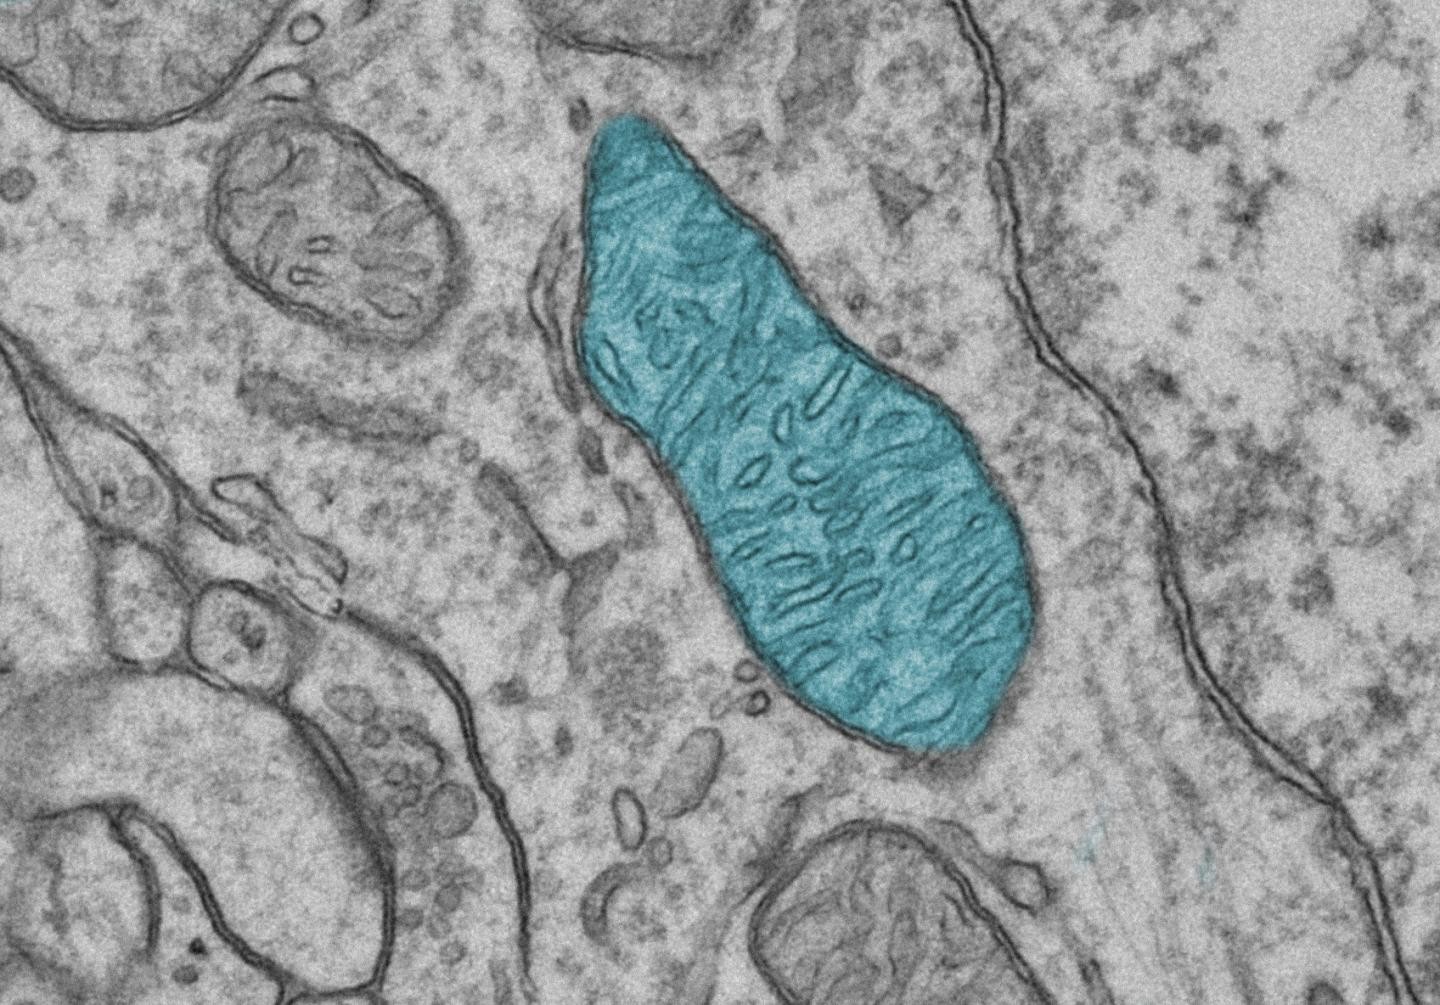 Micrografia eletrônica de cérebro de camundongo. Mitocôndria aparece destacada em azul (Foto: Mikaela Laine/PLOS Genetics)